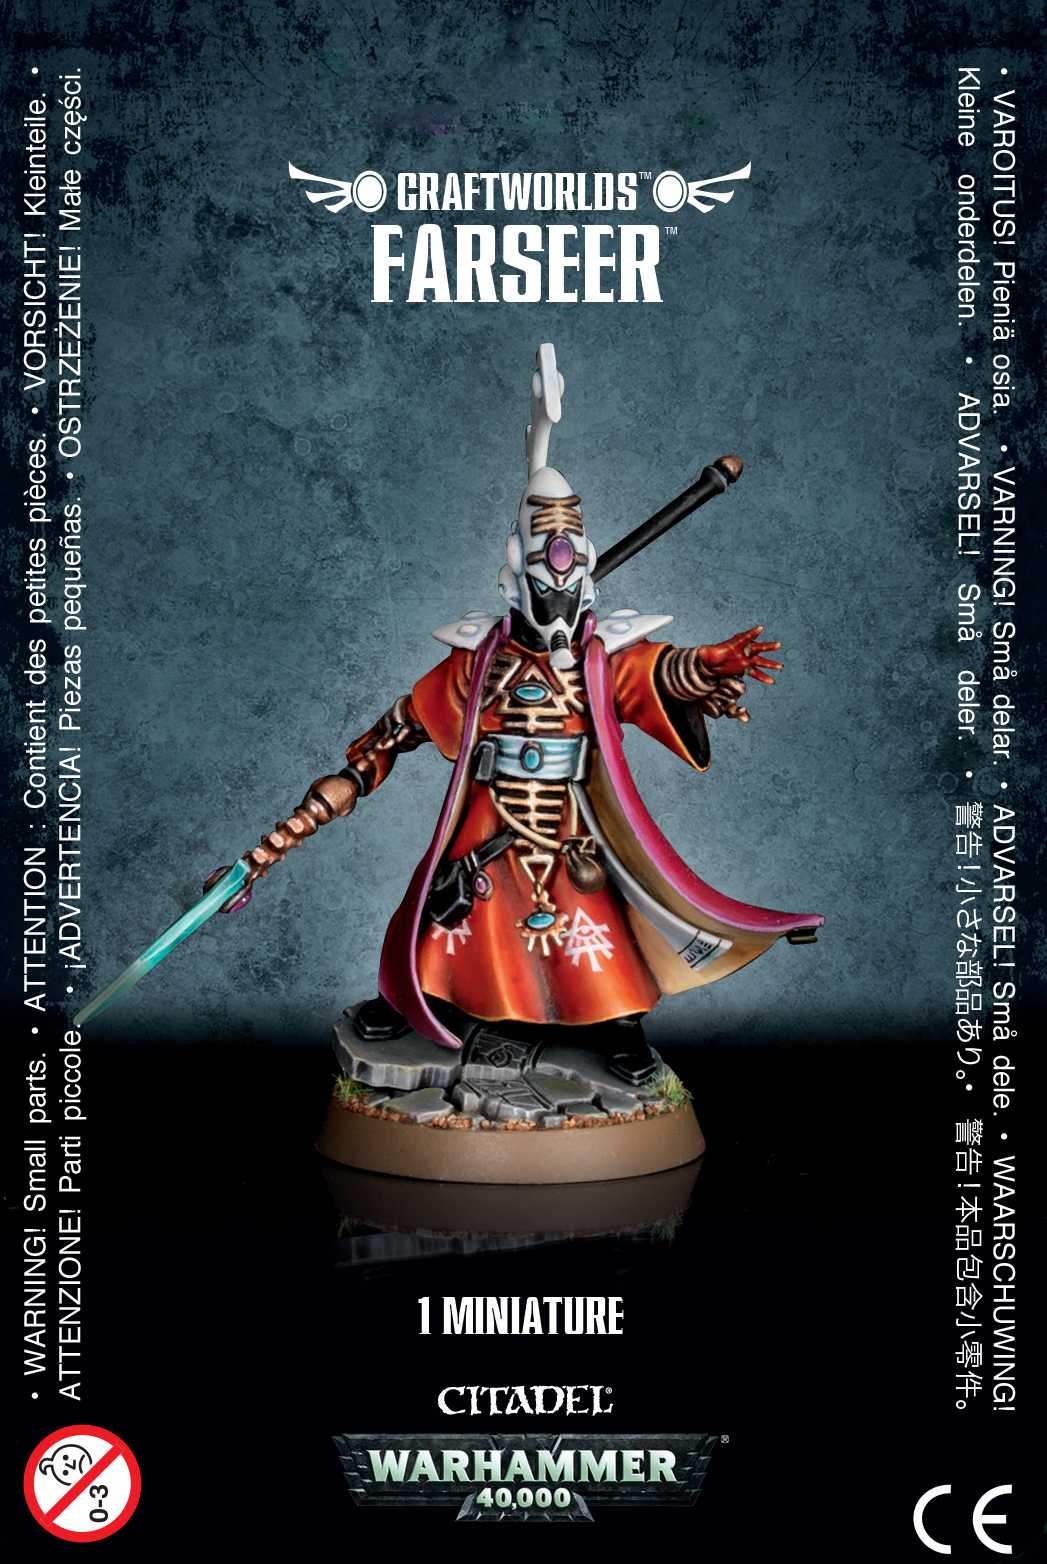 Farseer - 46-05 - Craftworlds - Warhammer 40.000